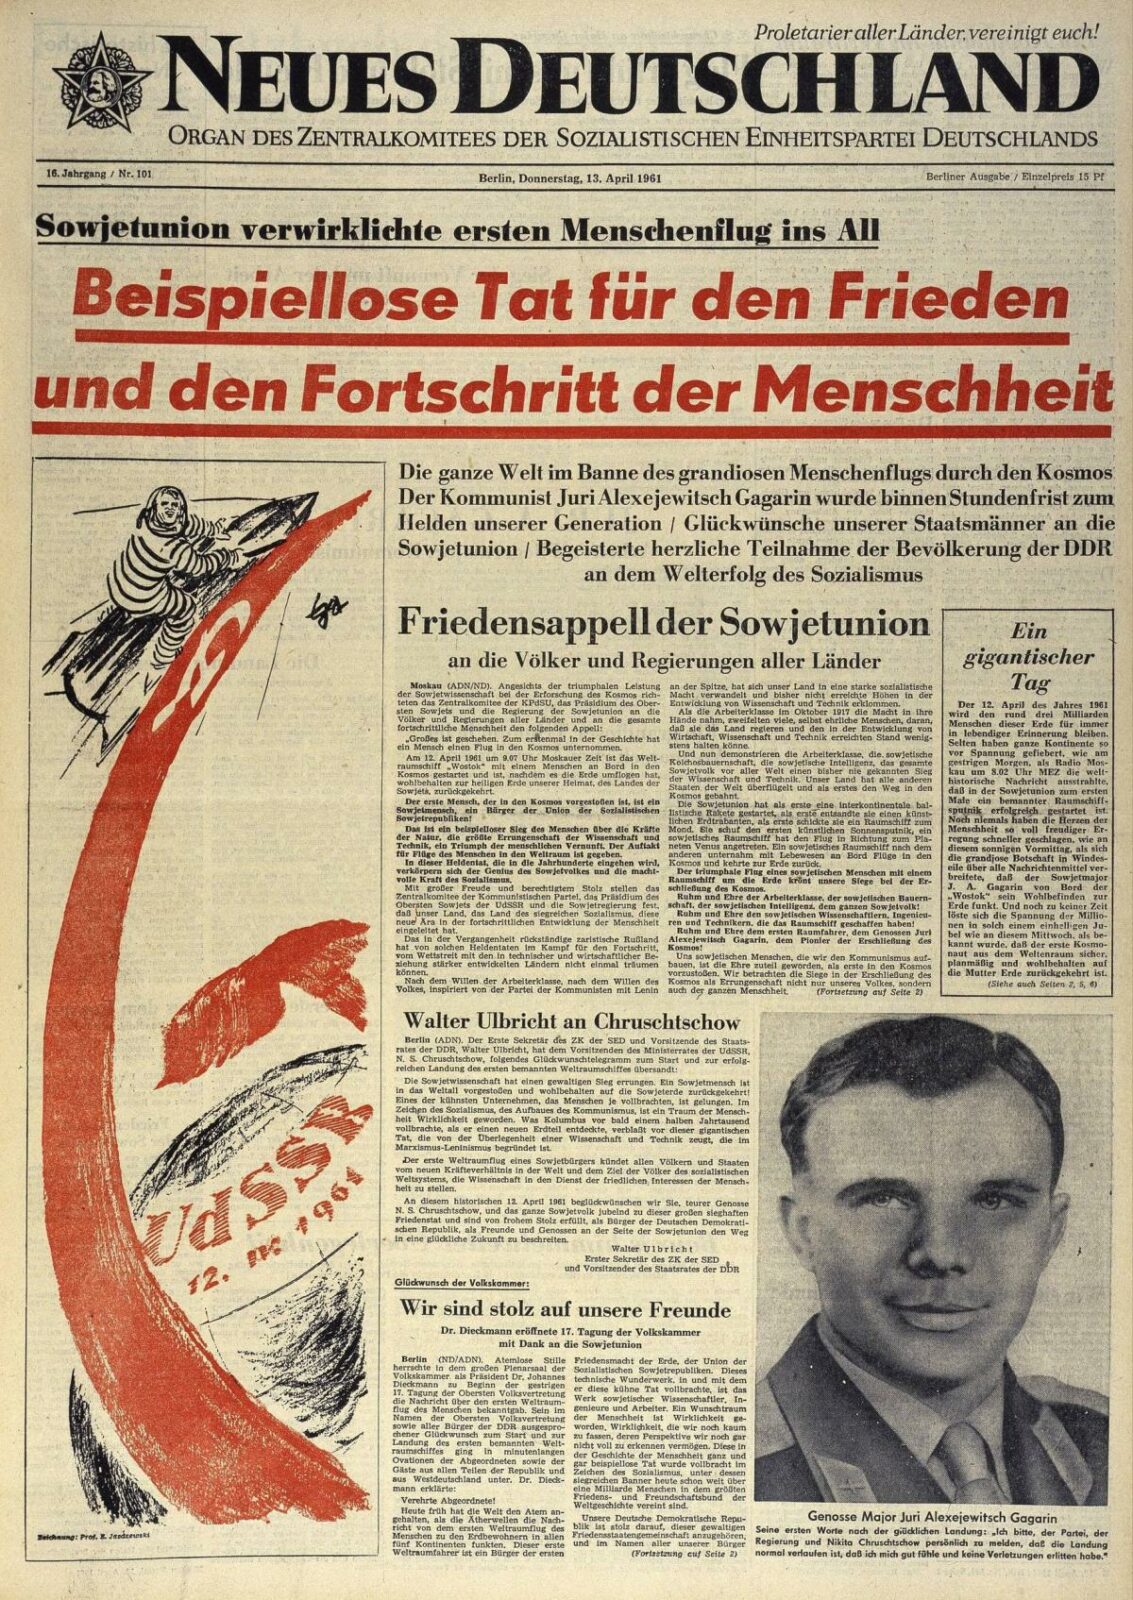 Gagarin Titelseite Neues Deutschland Gagarin Title Page Neues Deutschland